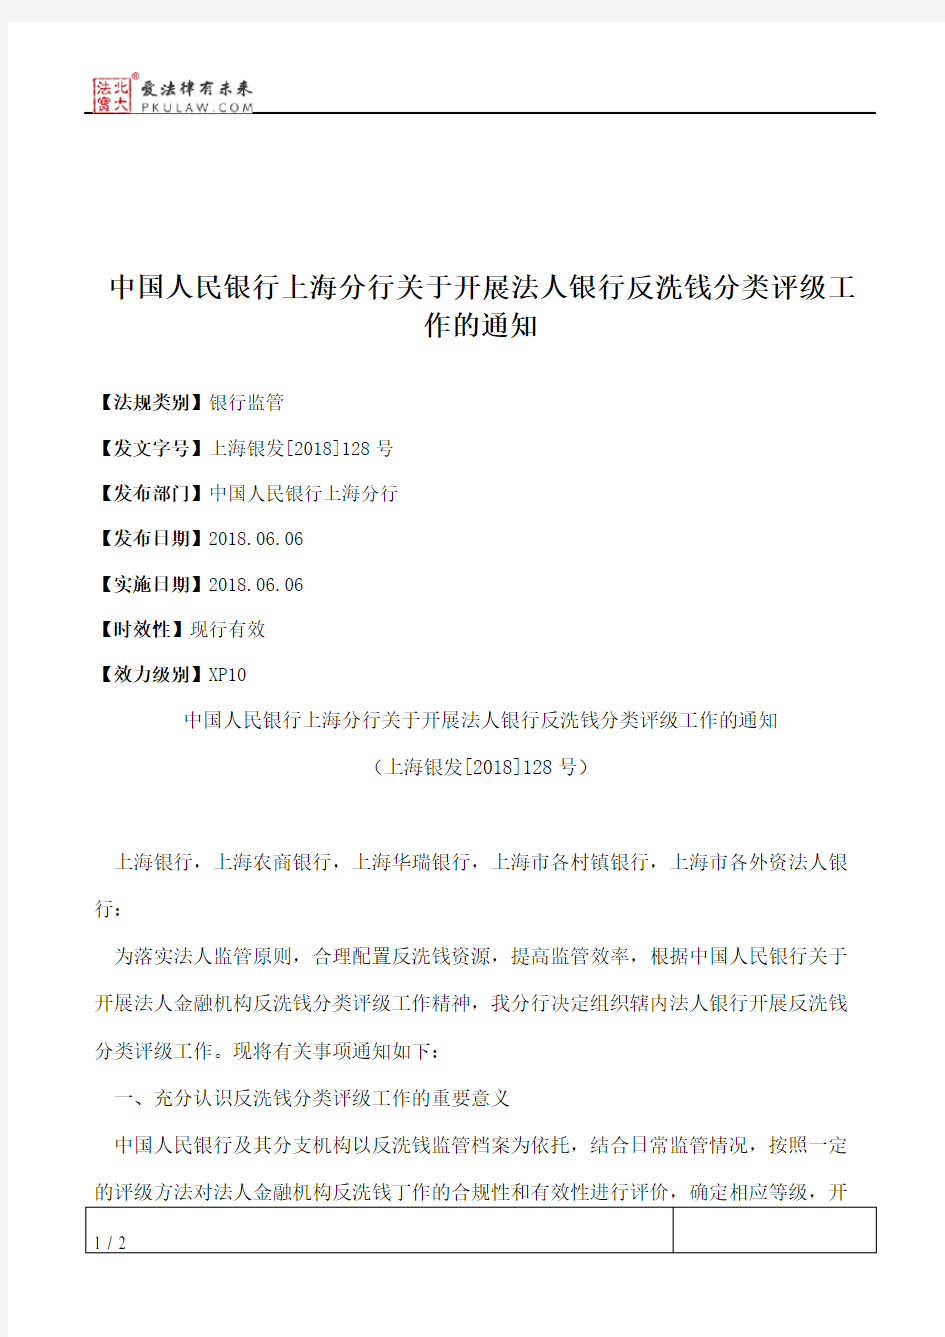 中国人民银行上海分行关于开展法人银行反洗钱分类评级工作的通知